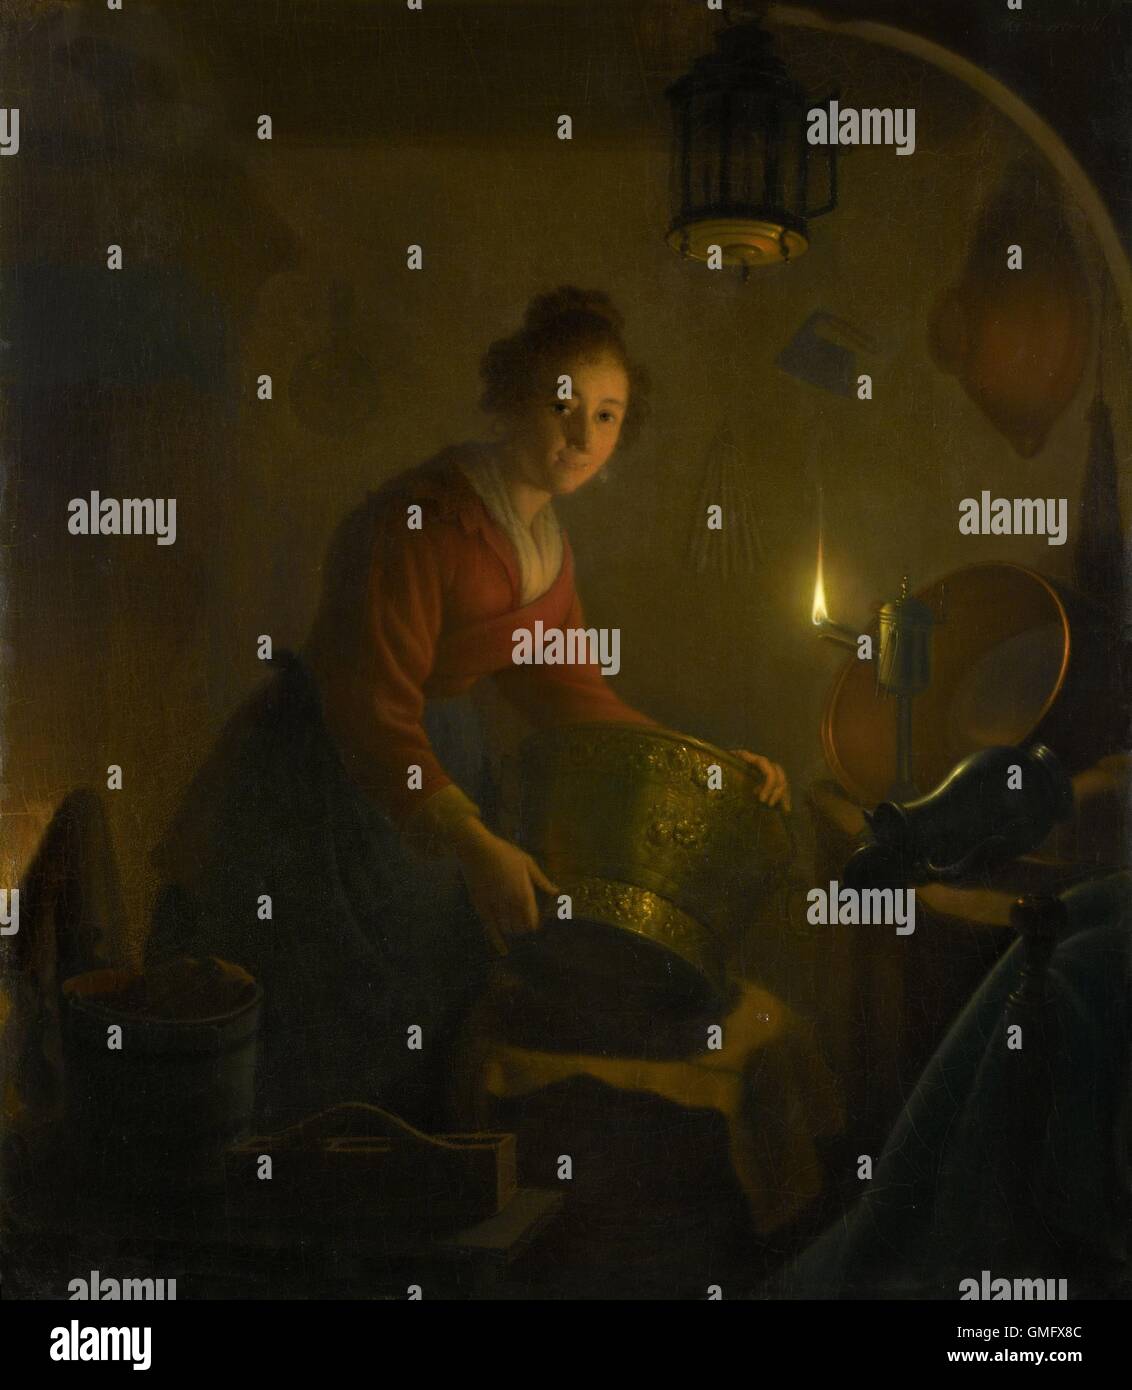 Una donna in una cucina a lume di candela, da Michiel Versteegh, c. 1830, pittura olandese, olio su pannello. Ella è la manipolazione di grandi vasi di metallo mediante la luce di una lampada ad olio (BSLOC 2016 2 171) Foto Stock